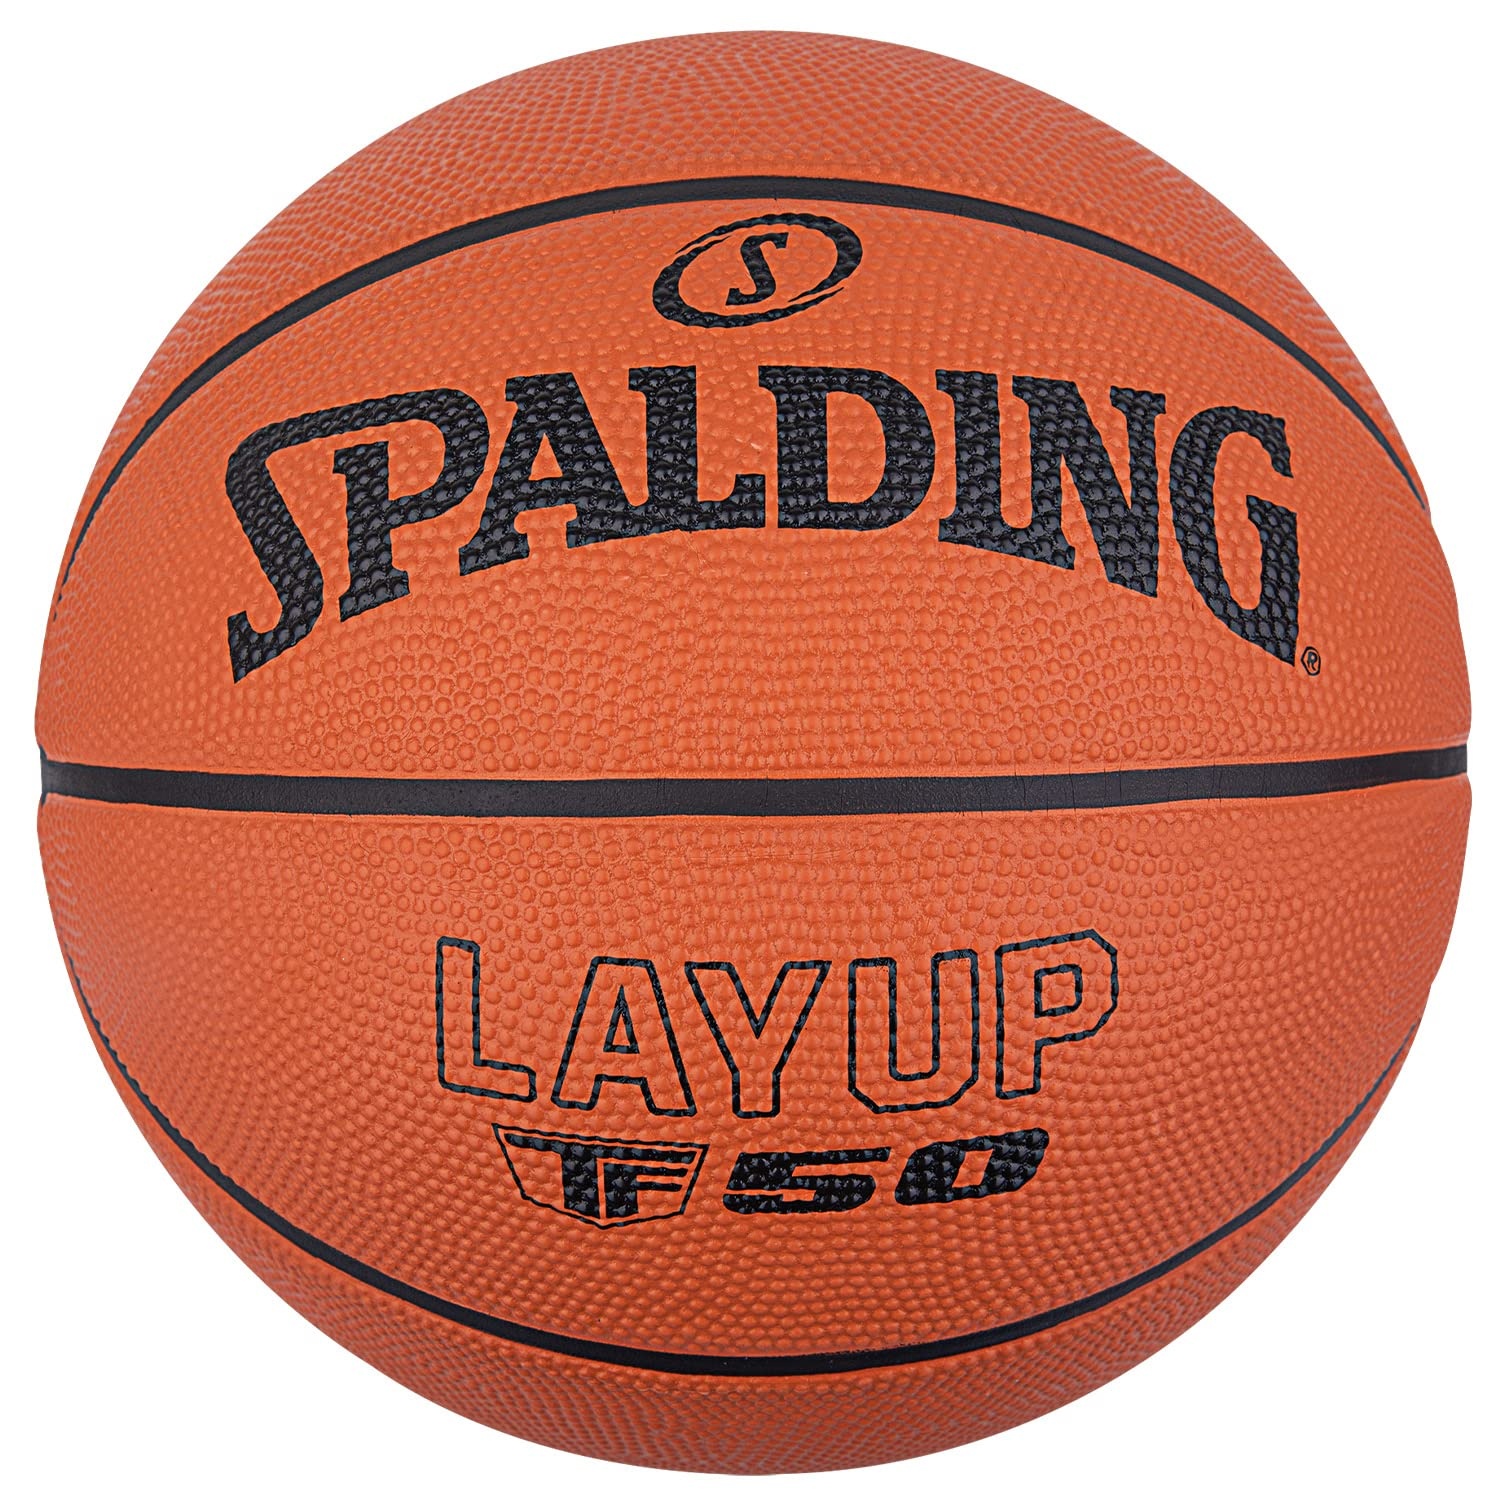 Spalding - TF-50 - Klassische Farbe - Basketball - Anfängerball - Material: Gummi - Outdoor - Anti-Rutsch - Hervorragender Grip - Sehr widerstandsfähig - Nicht aufgeblasen (4)